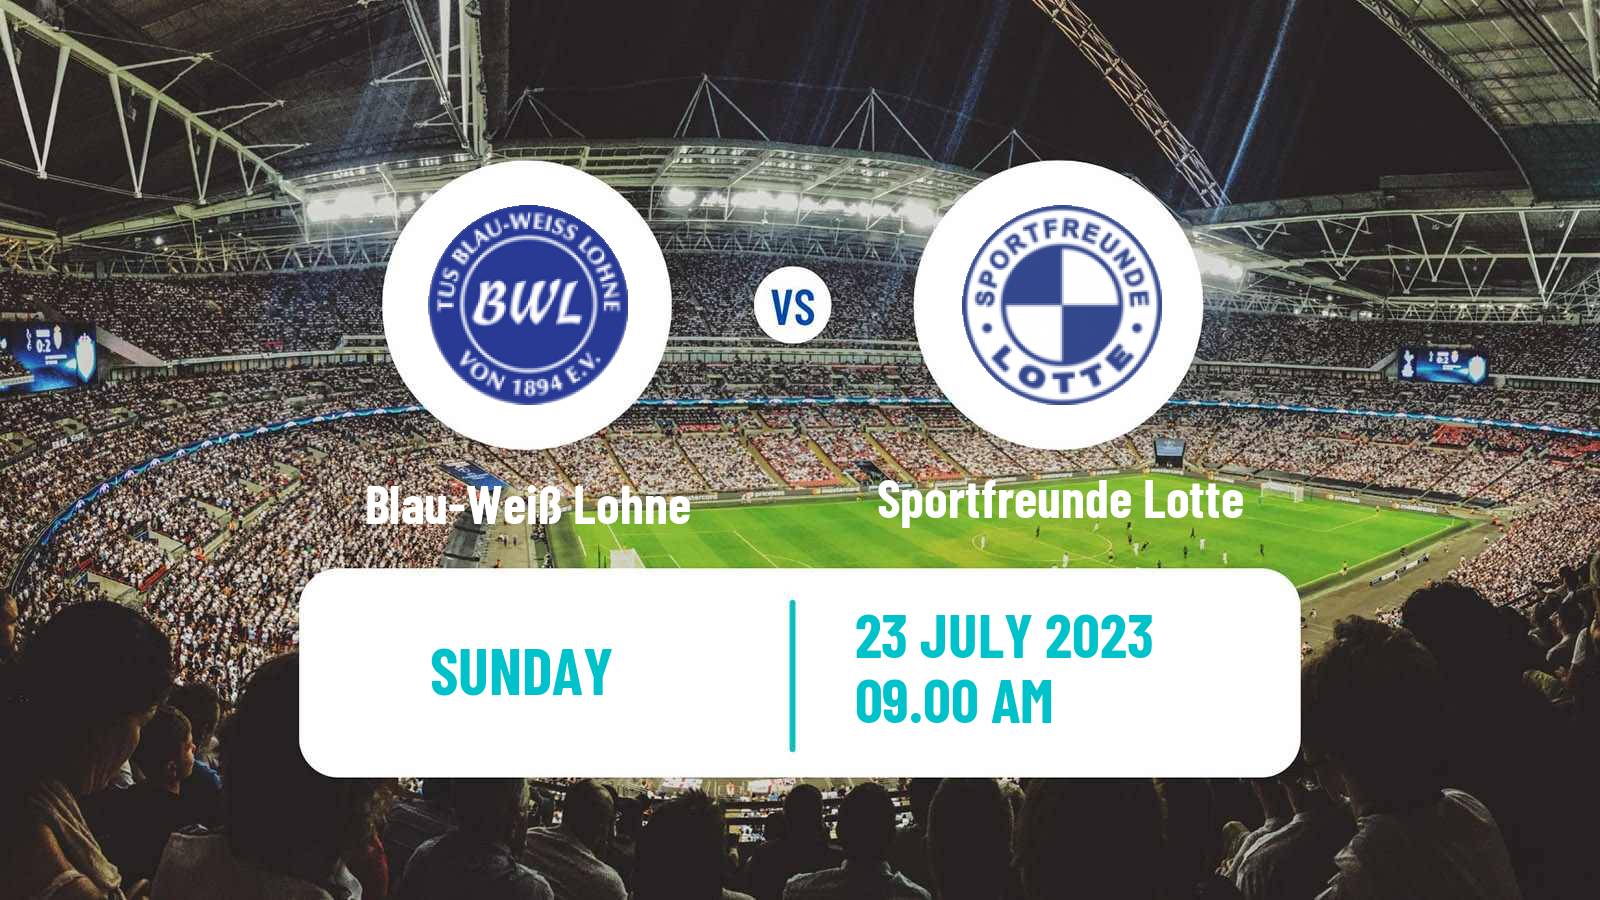 Soccer Club Friendly Blau-Weiß Lohne - Sportfreunde Lotte